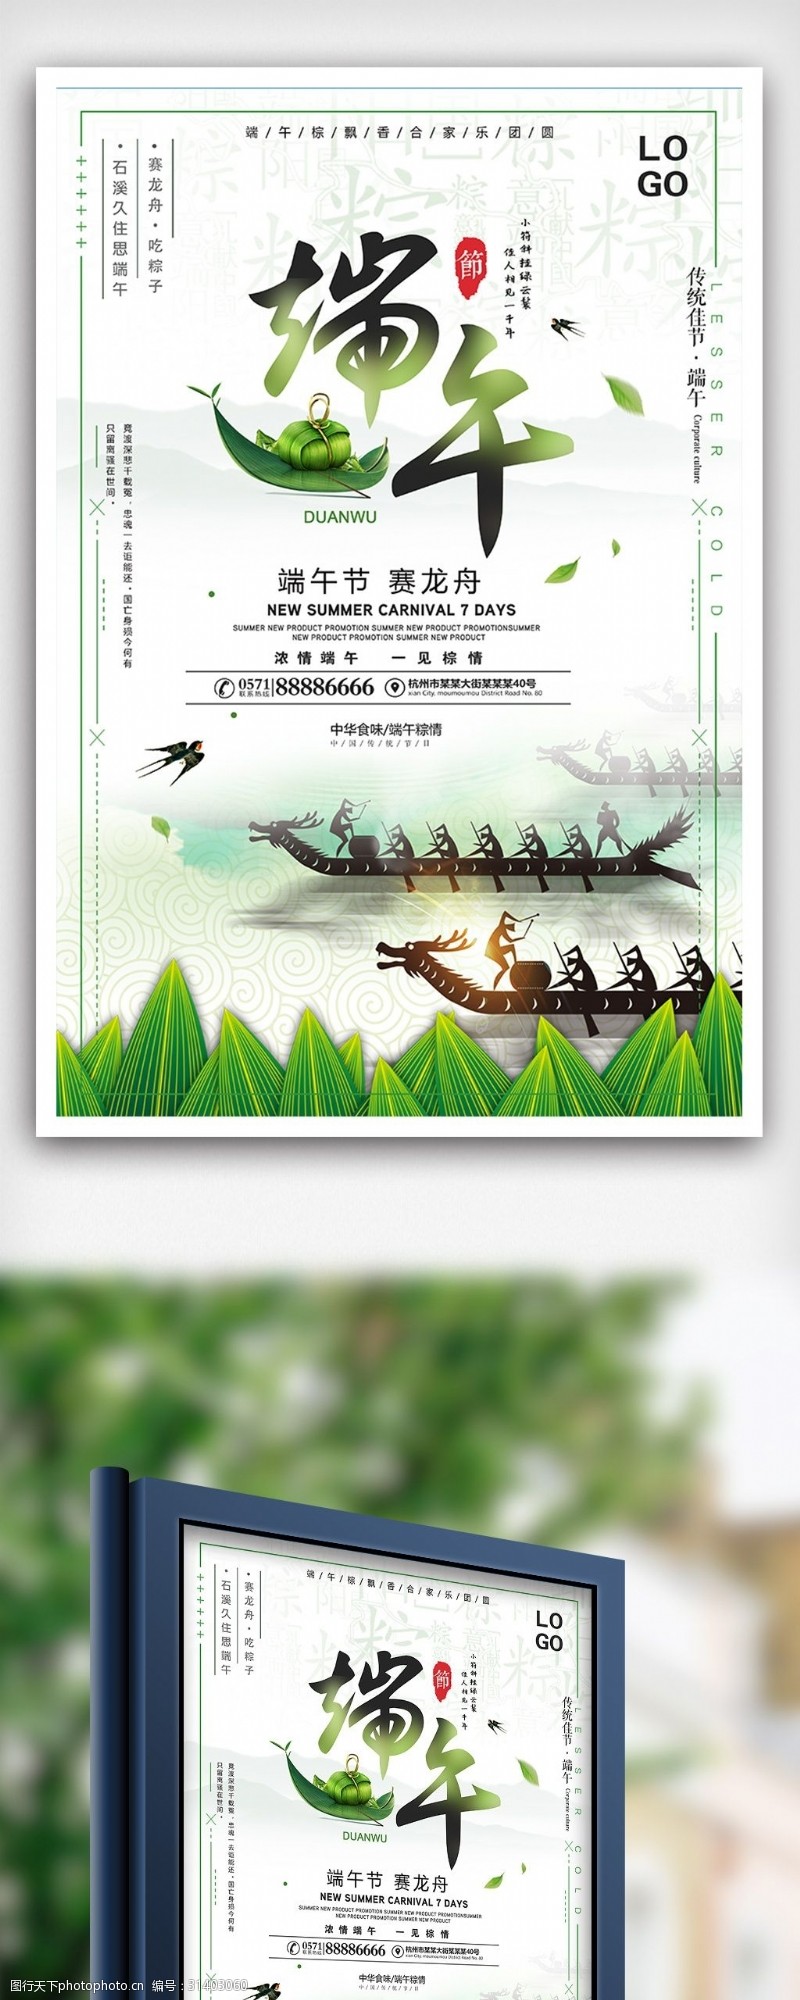 端午节模板下载24节气端午节赛龙舟节日海报